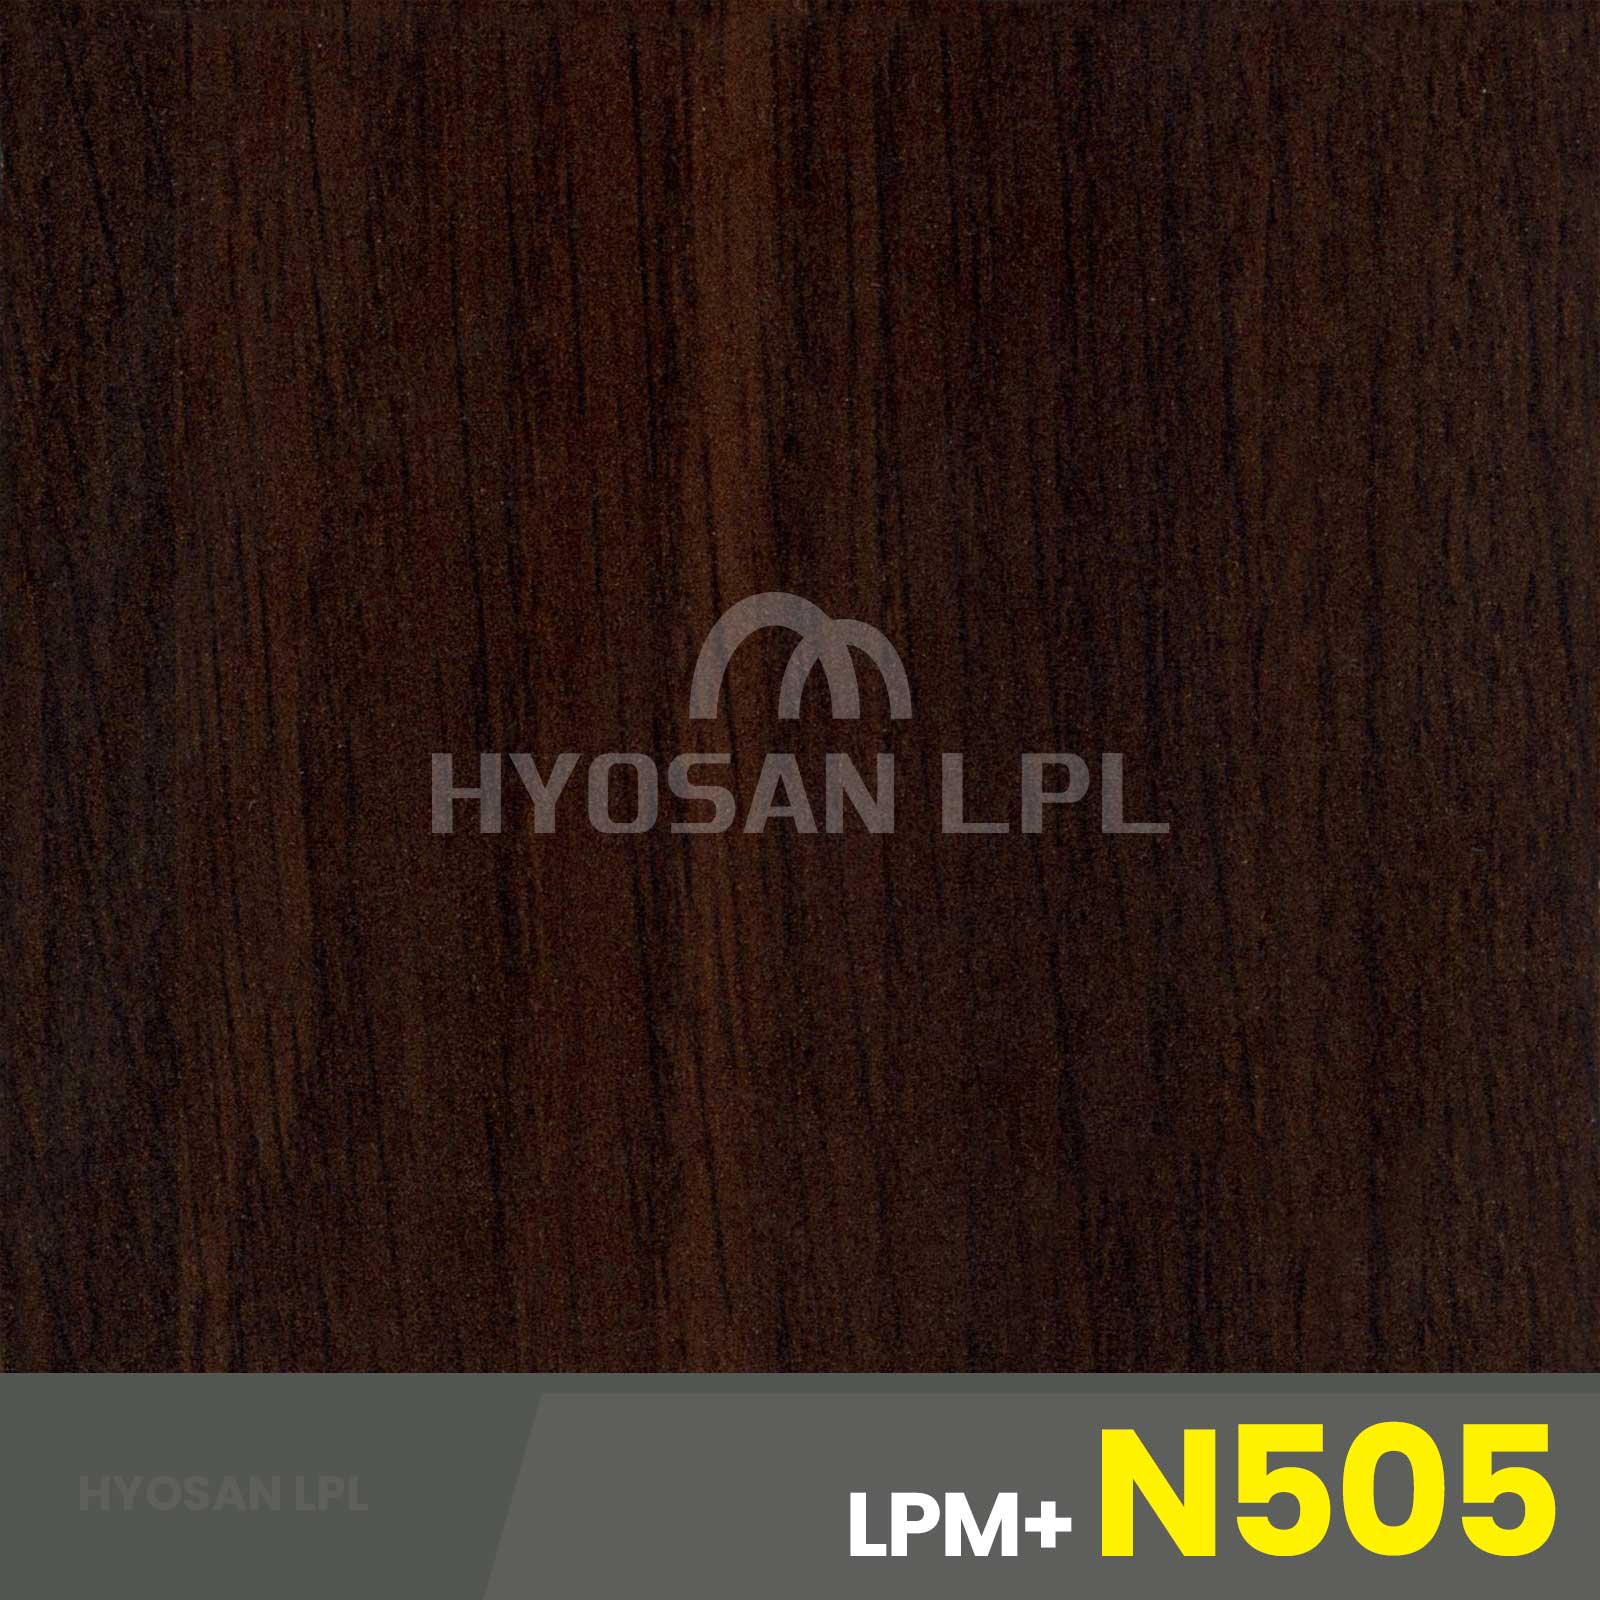 LPM+N505